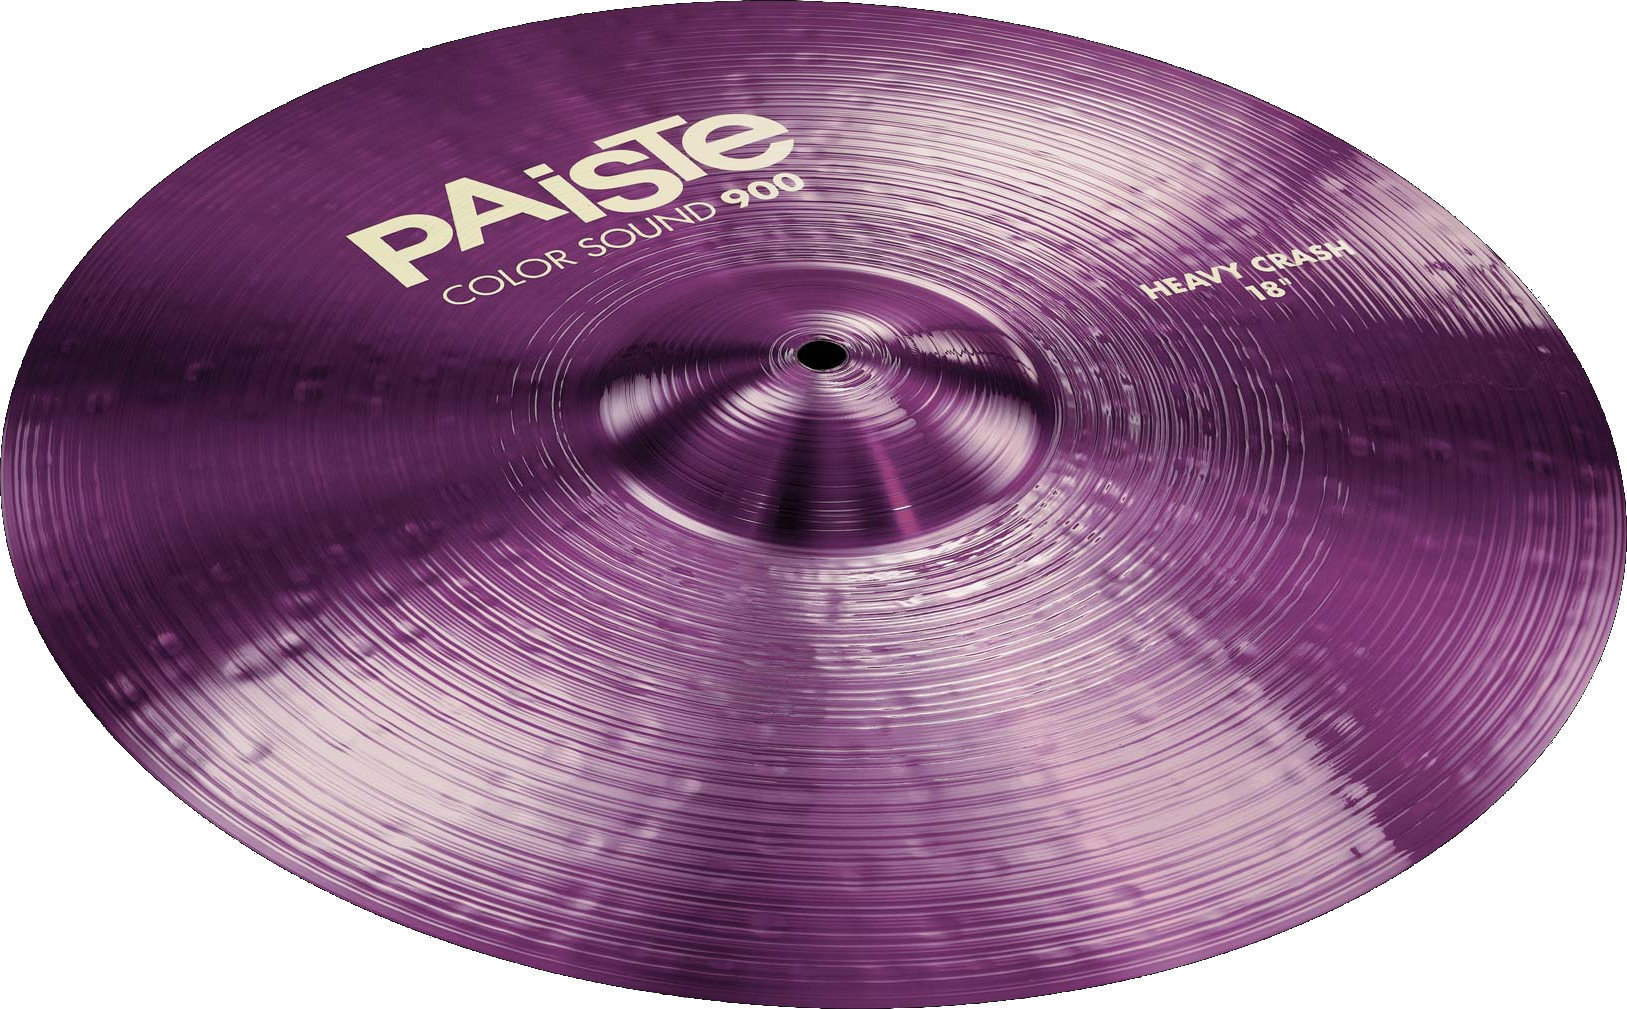 Crash Cymbal Paiste Color Sound 900  Heavy Crash Cymbal 16" Violet